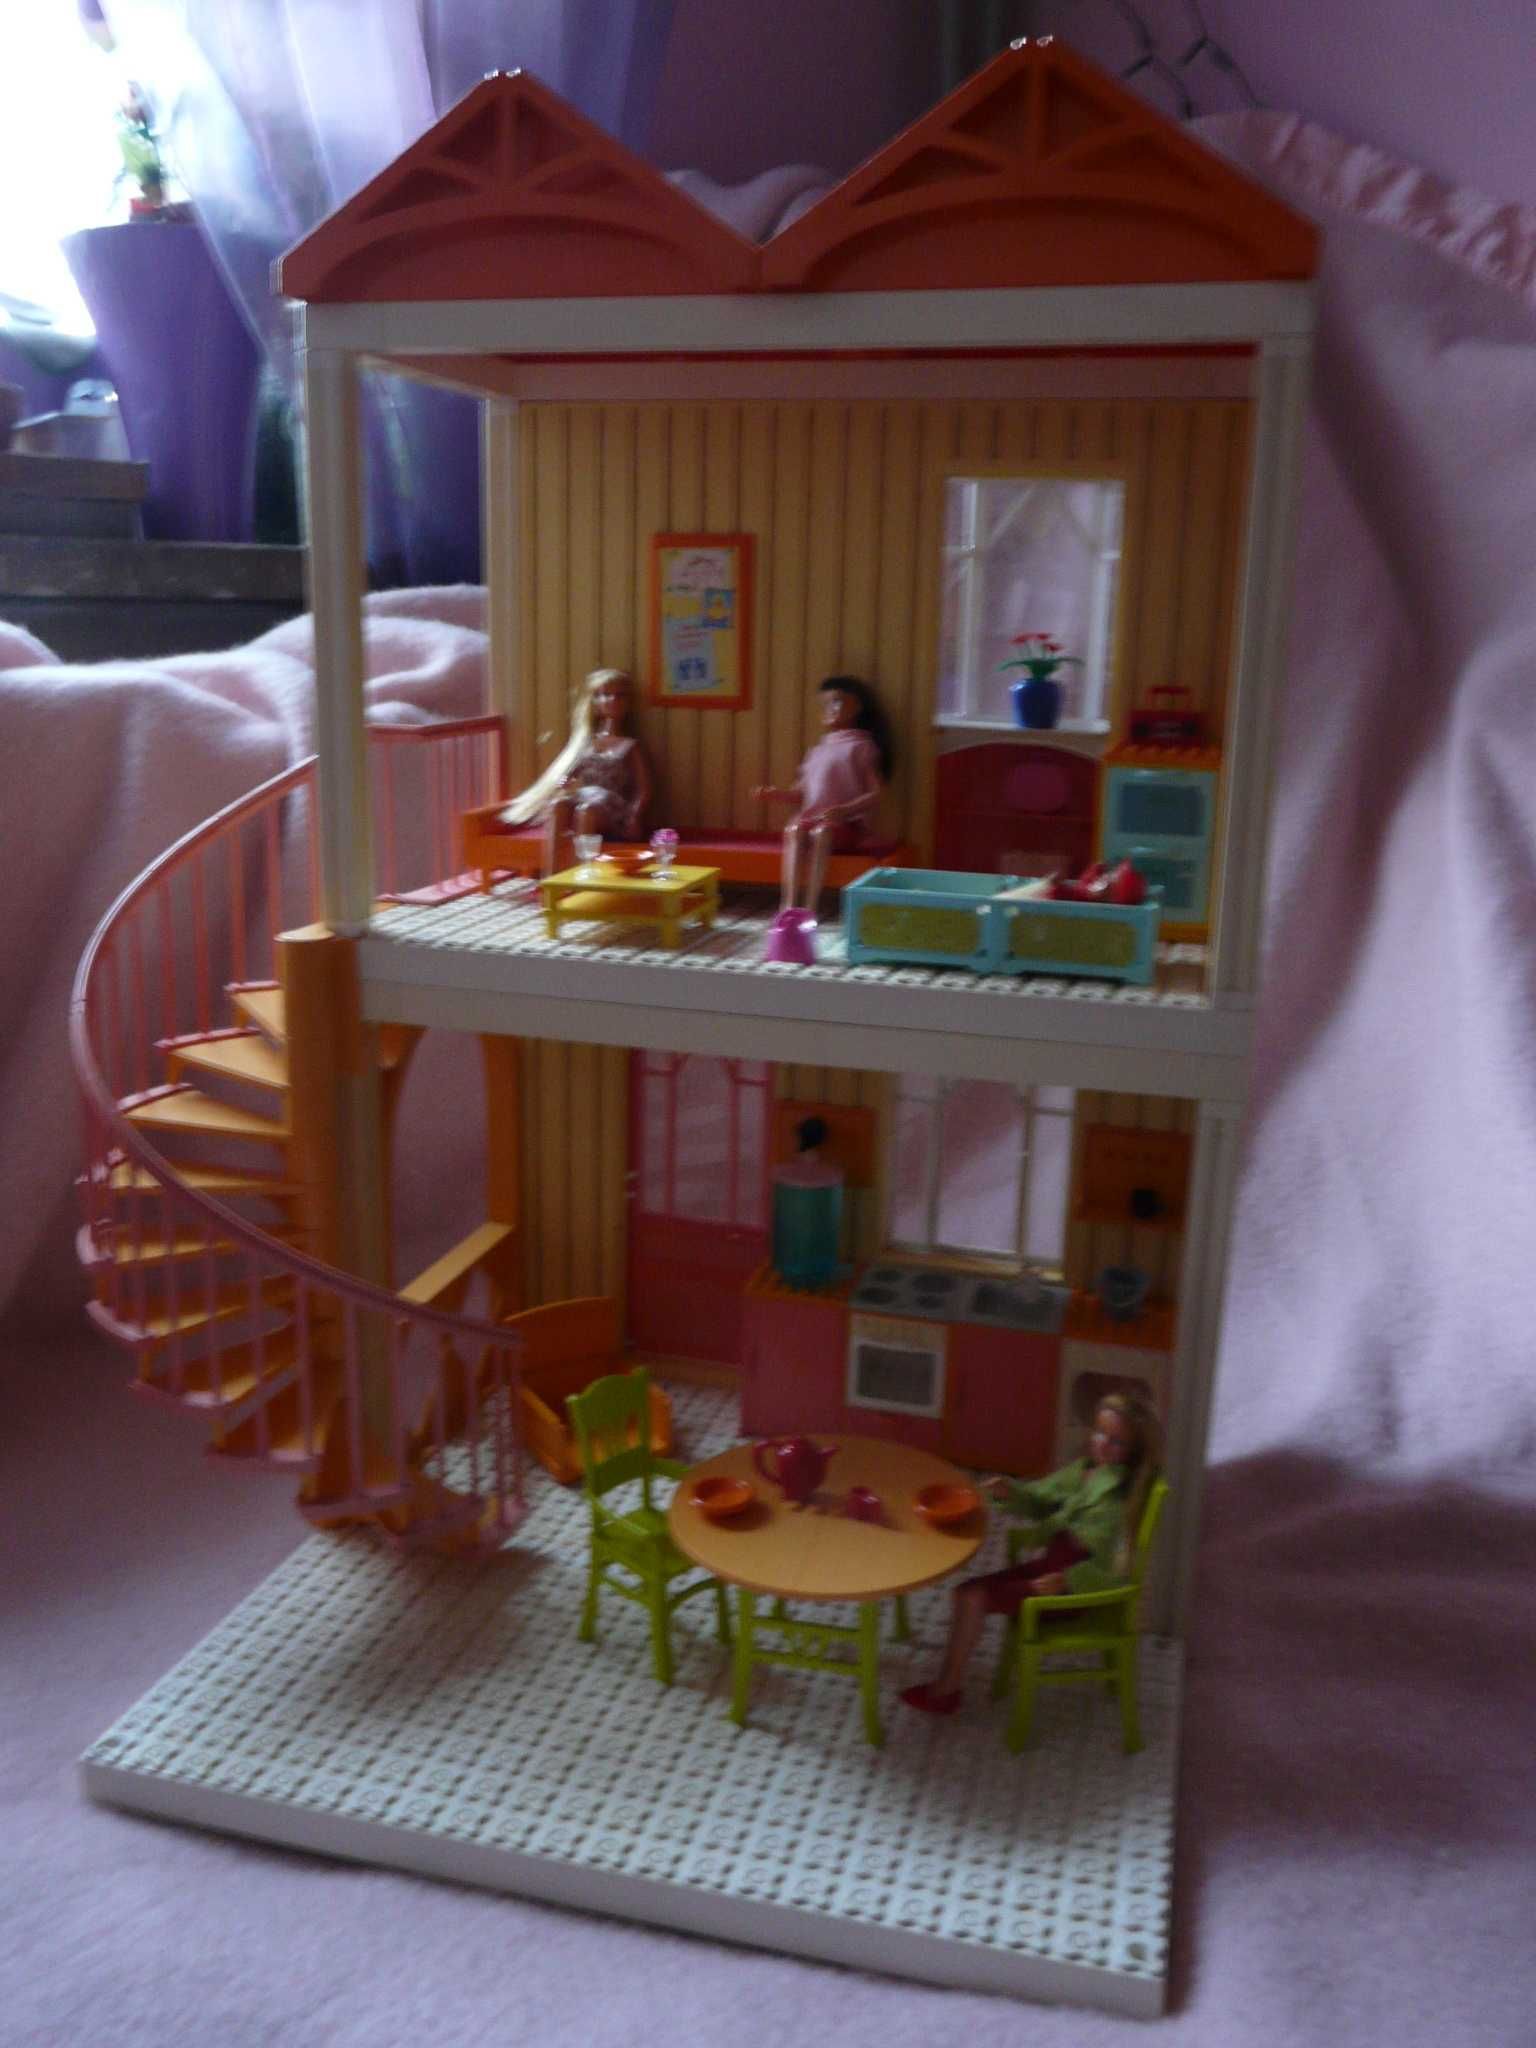 LEGO scala belville friends piętrowy domek lalek z kuchnią wys. 60 cm